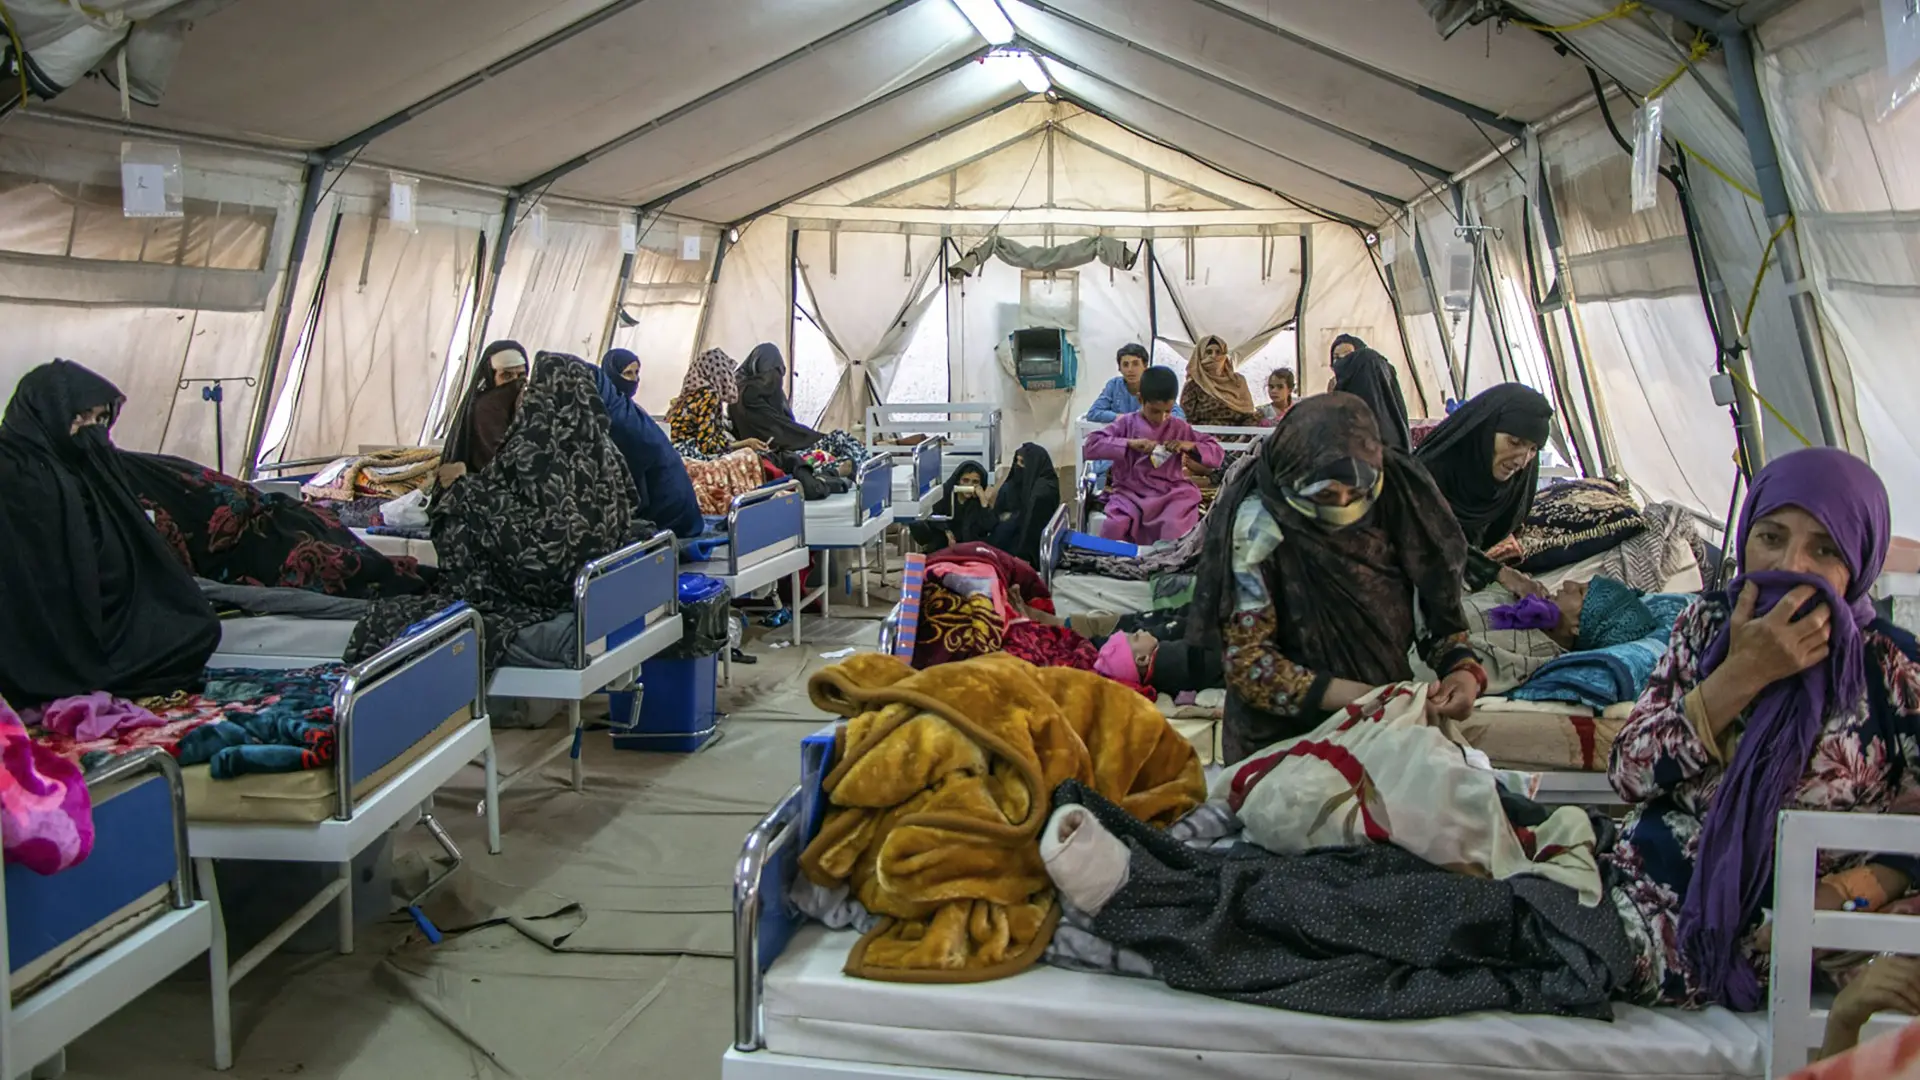 Tan2023-10-1512161975_4 avganistan zemljotres MSF Afghanistan via AP-6530d619d00a6.webp